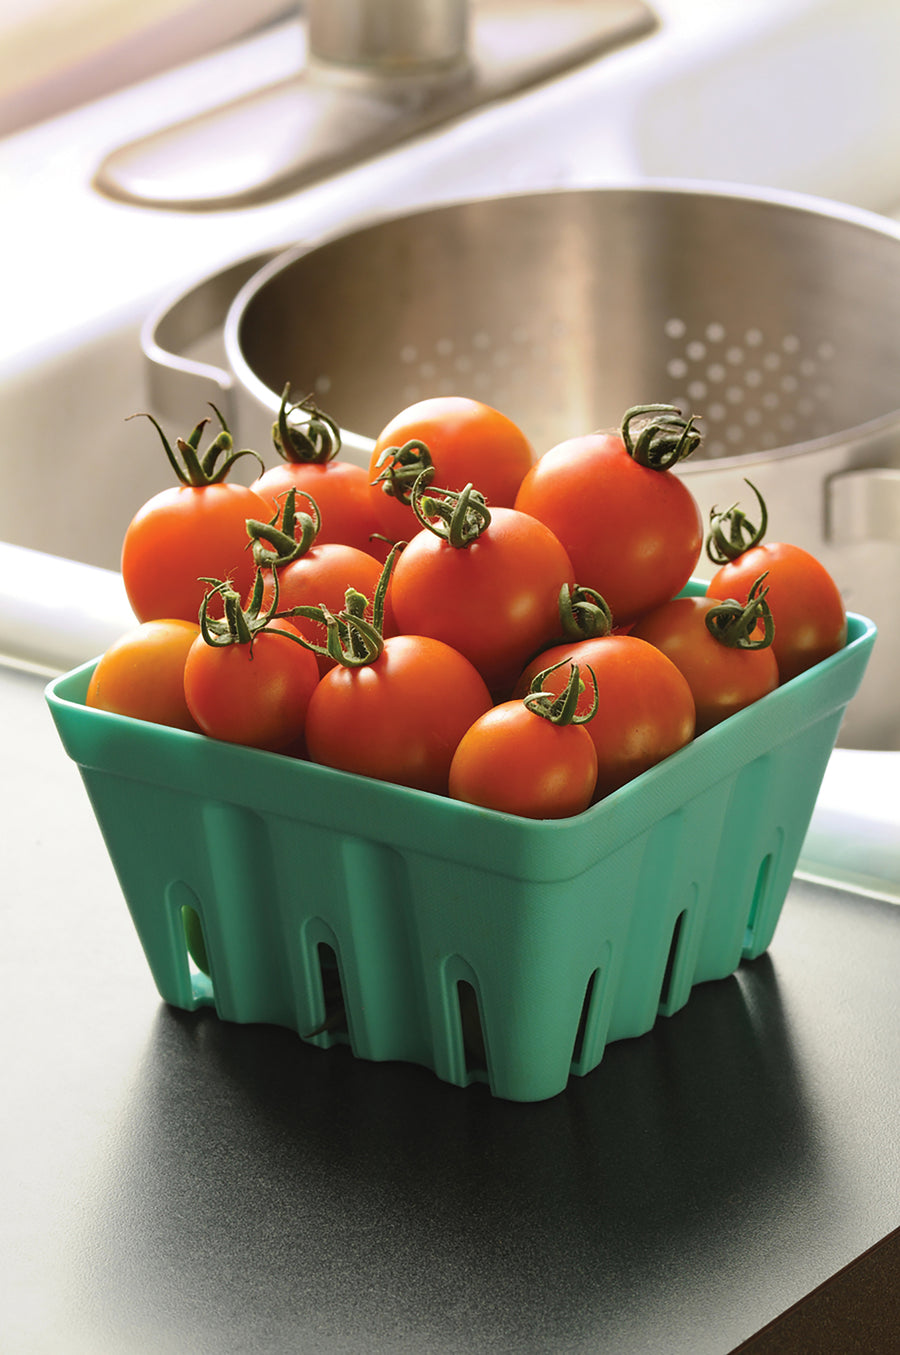 Tomatoes, Orange Zinger Hybrid